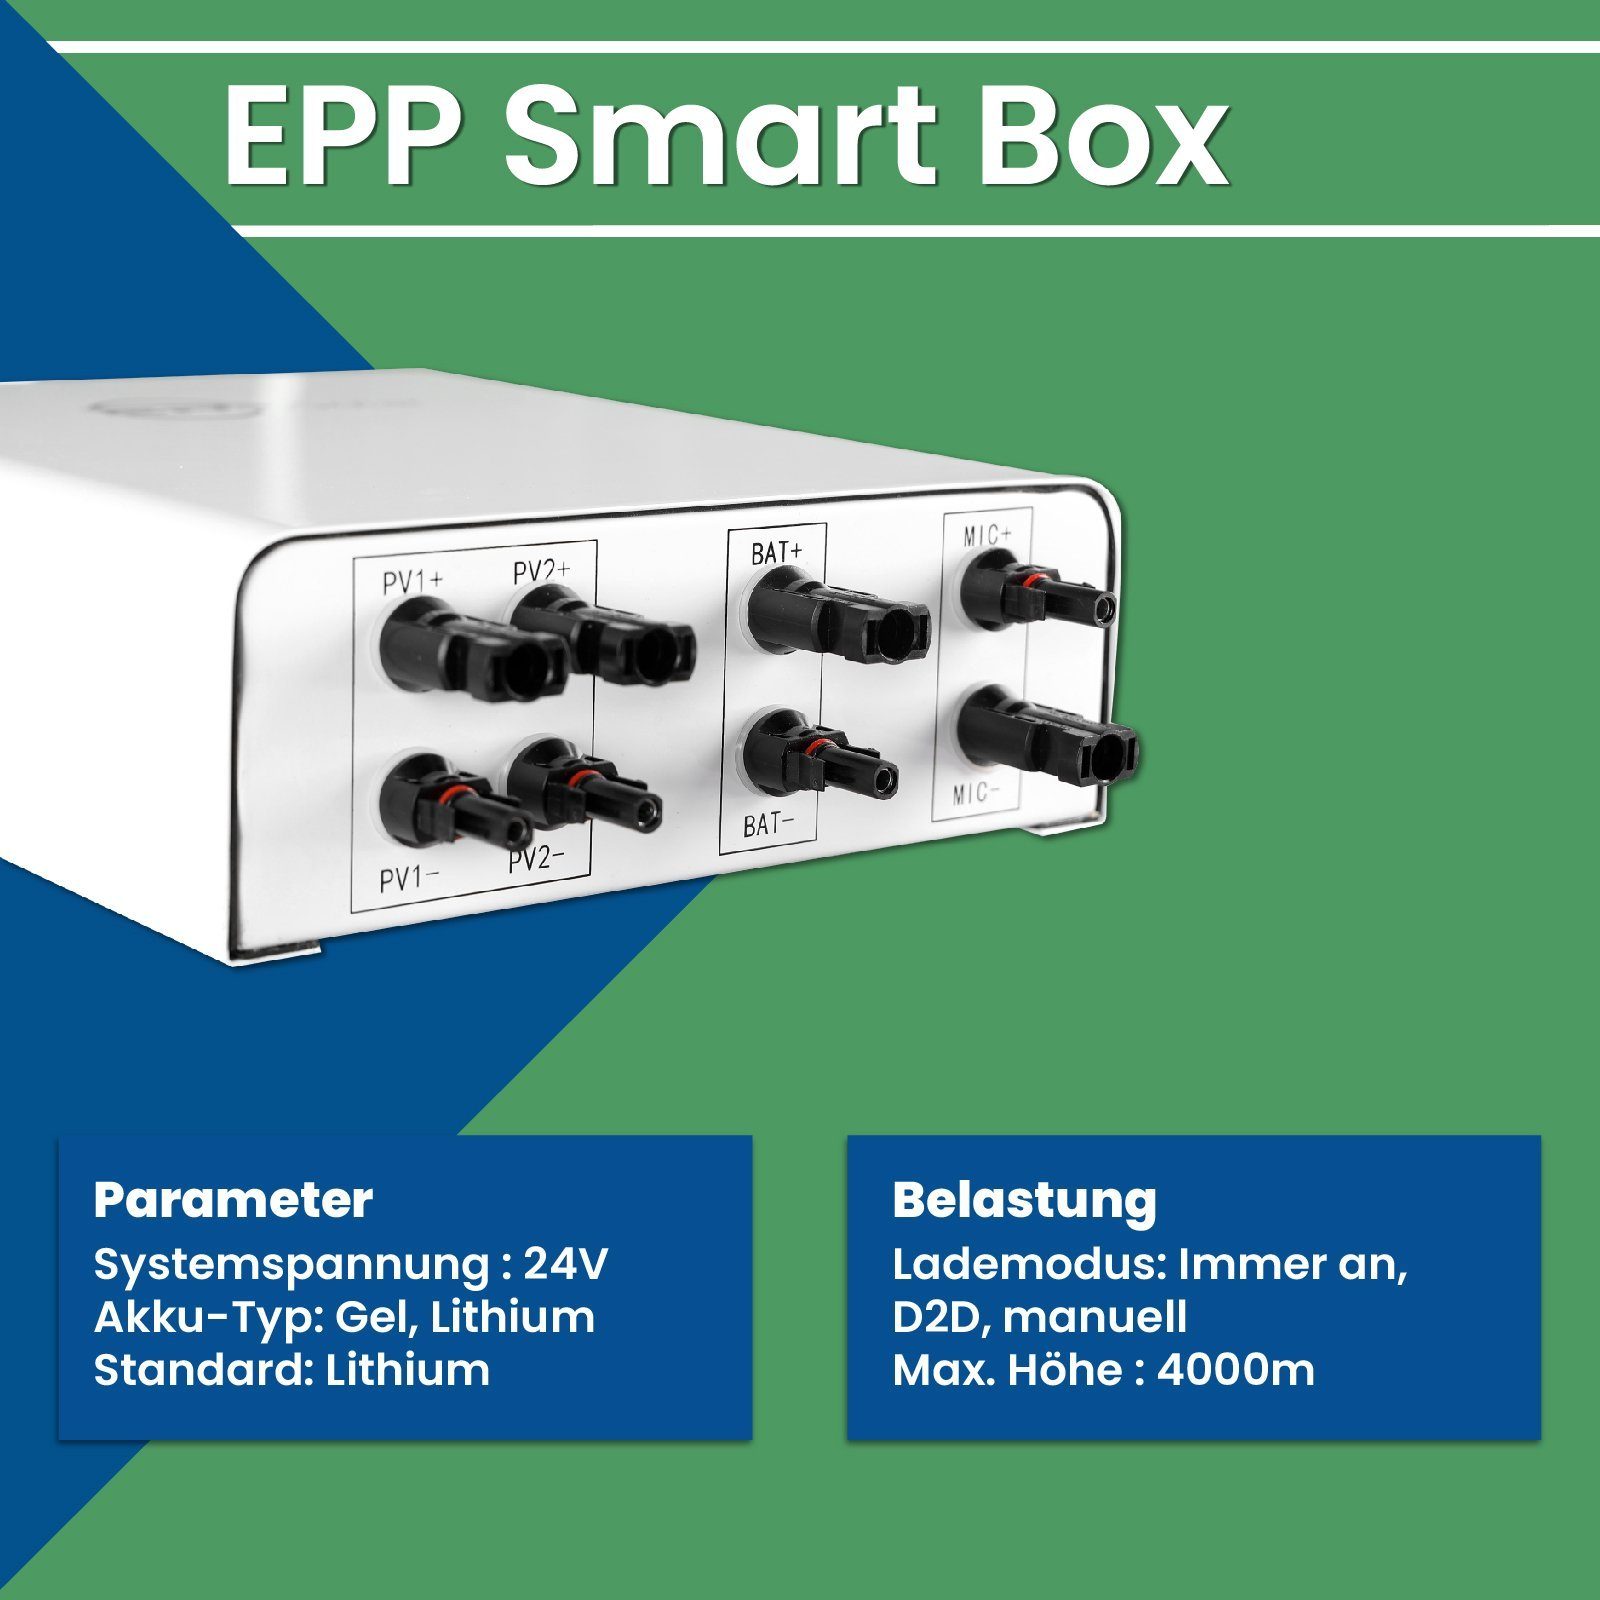 EPP.Solar Solaranlage EPP im 30A mit Nachrüstbar Balkonkraftwerk Speicher Smart Box